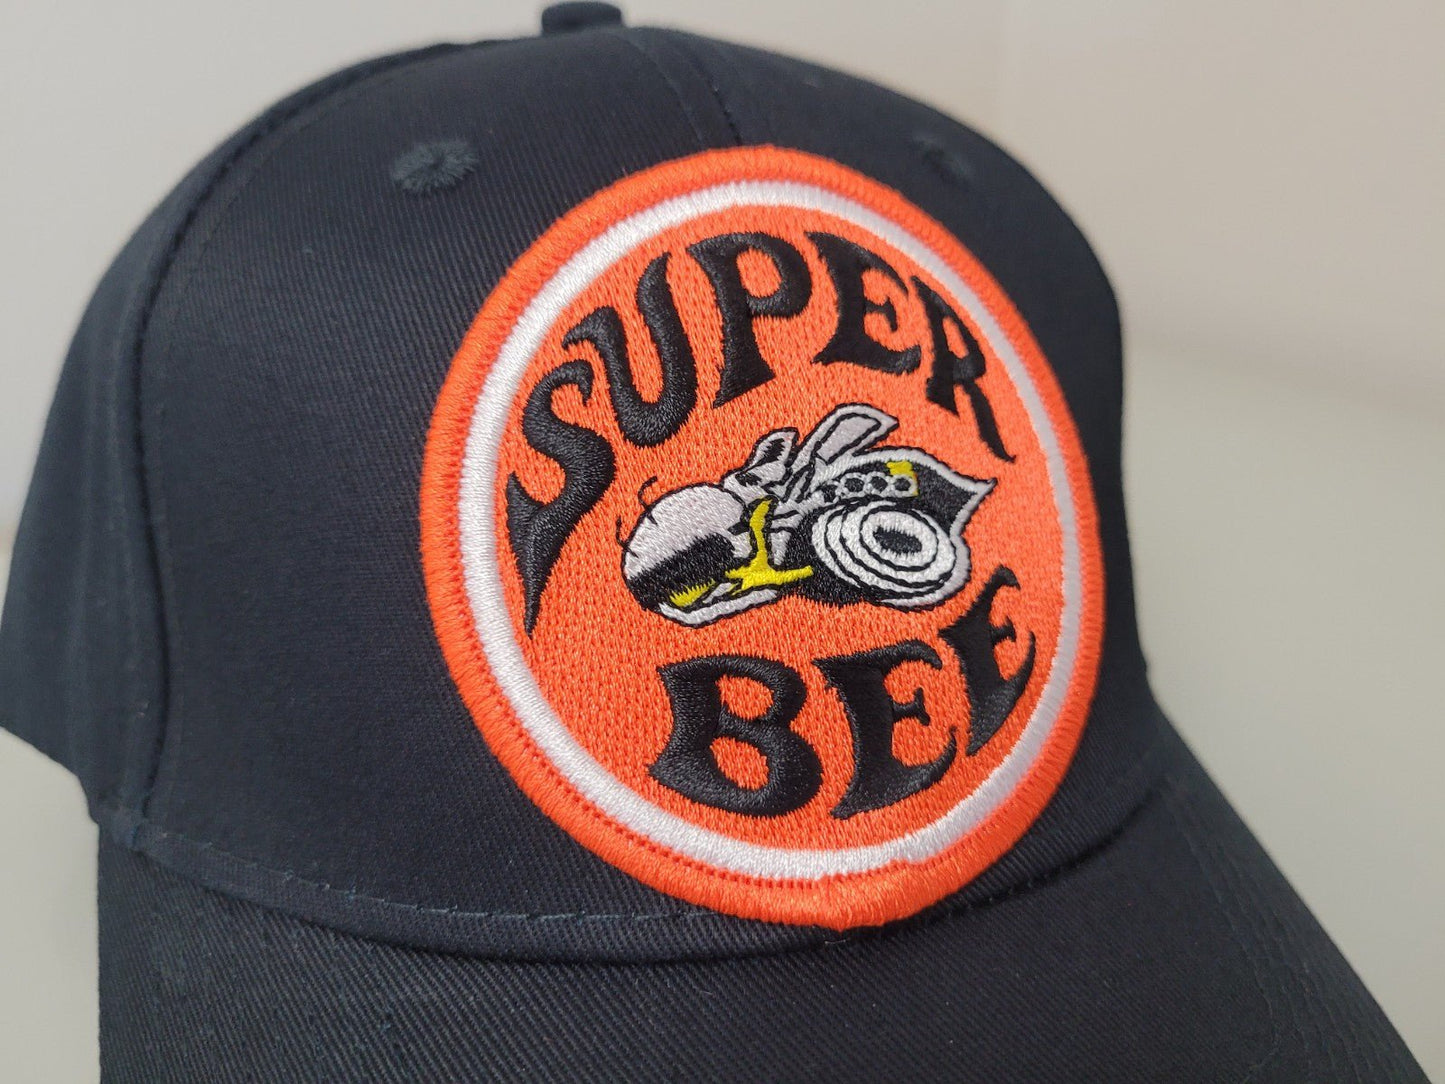 Dodge SuperBee Baseball Cap - ParkersGear.com Hats